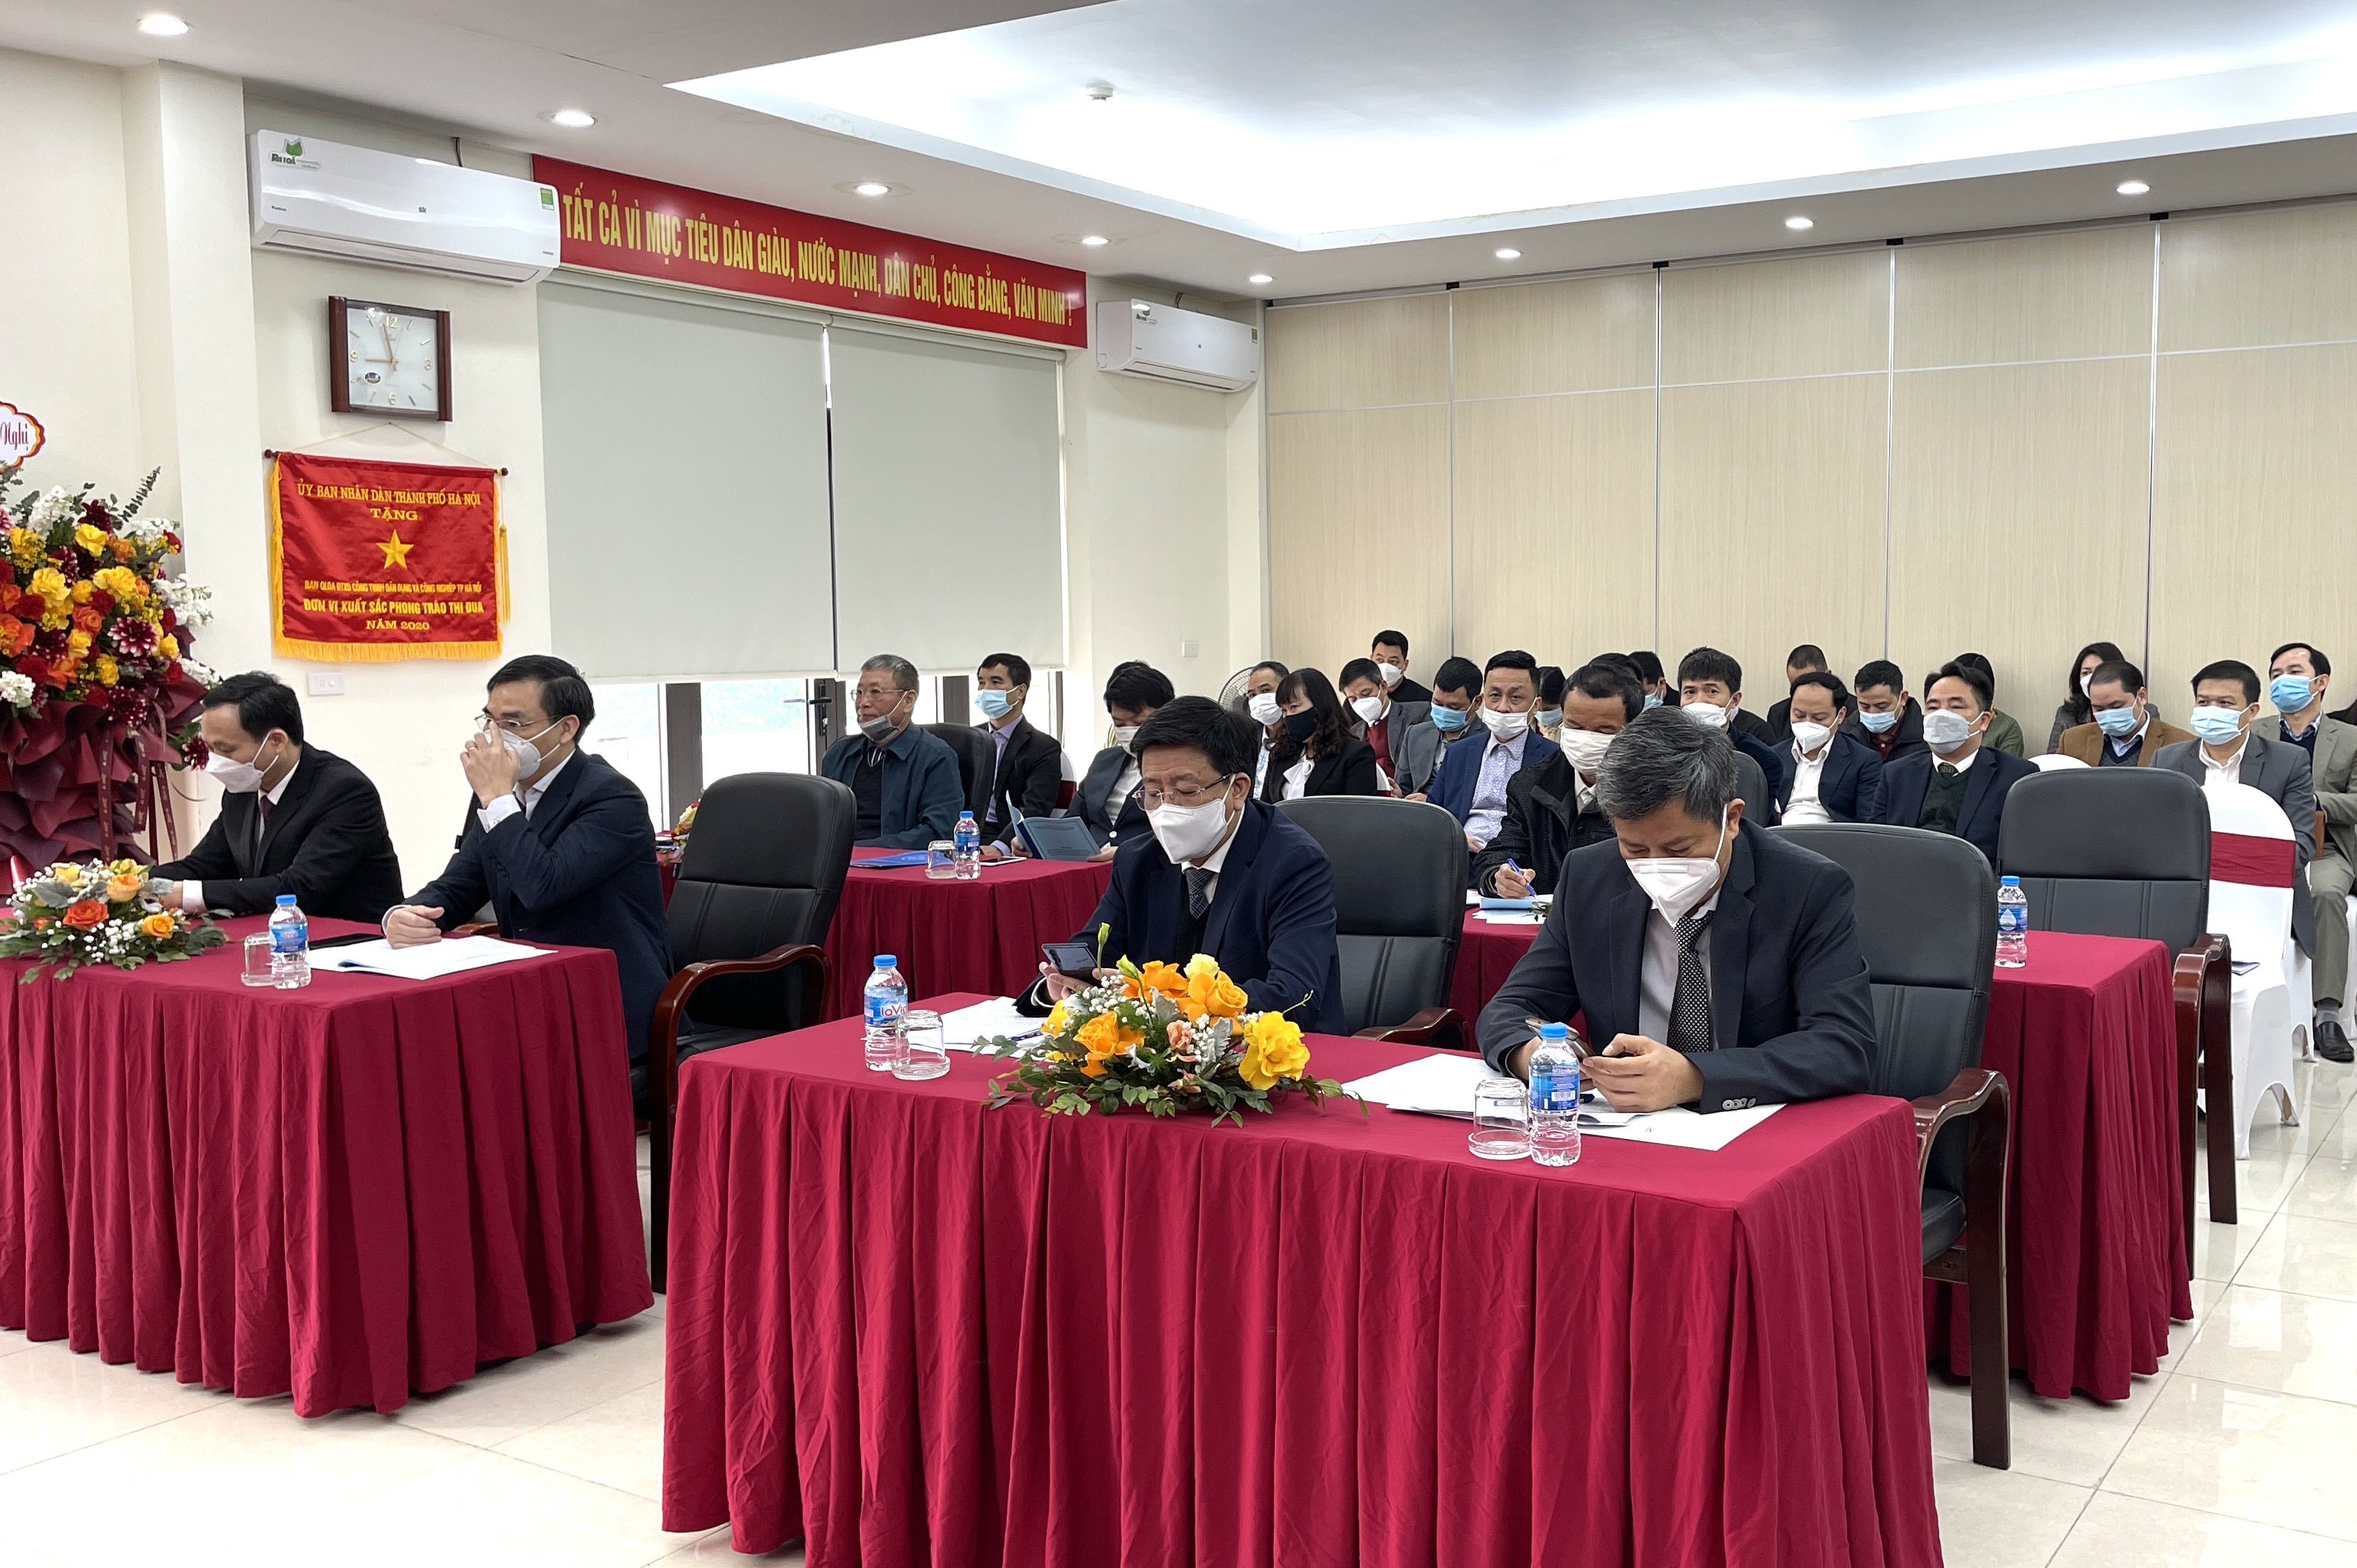 Ban QLDA đầu tư xây dựng công trình dân dụng và công nghiệp TP Hà Nội đã tổ chức Hội nghị triển khai nhiệm vụ công tác năm 2022.